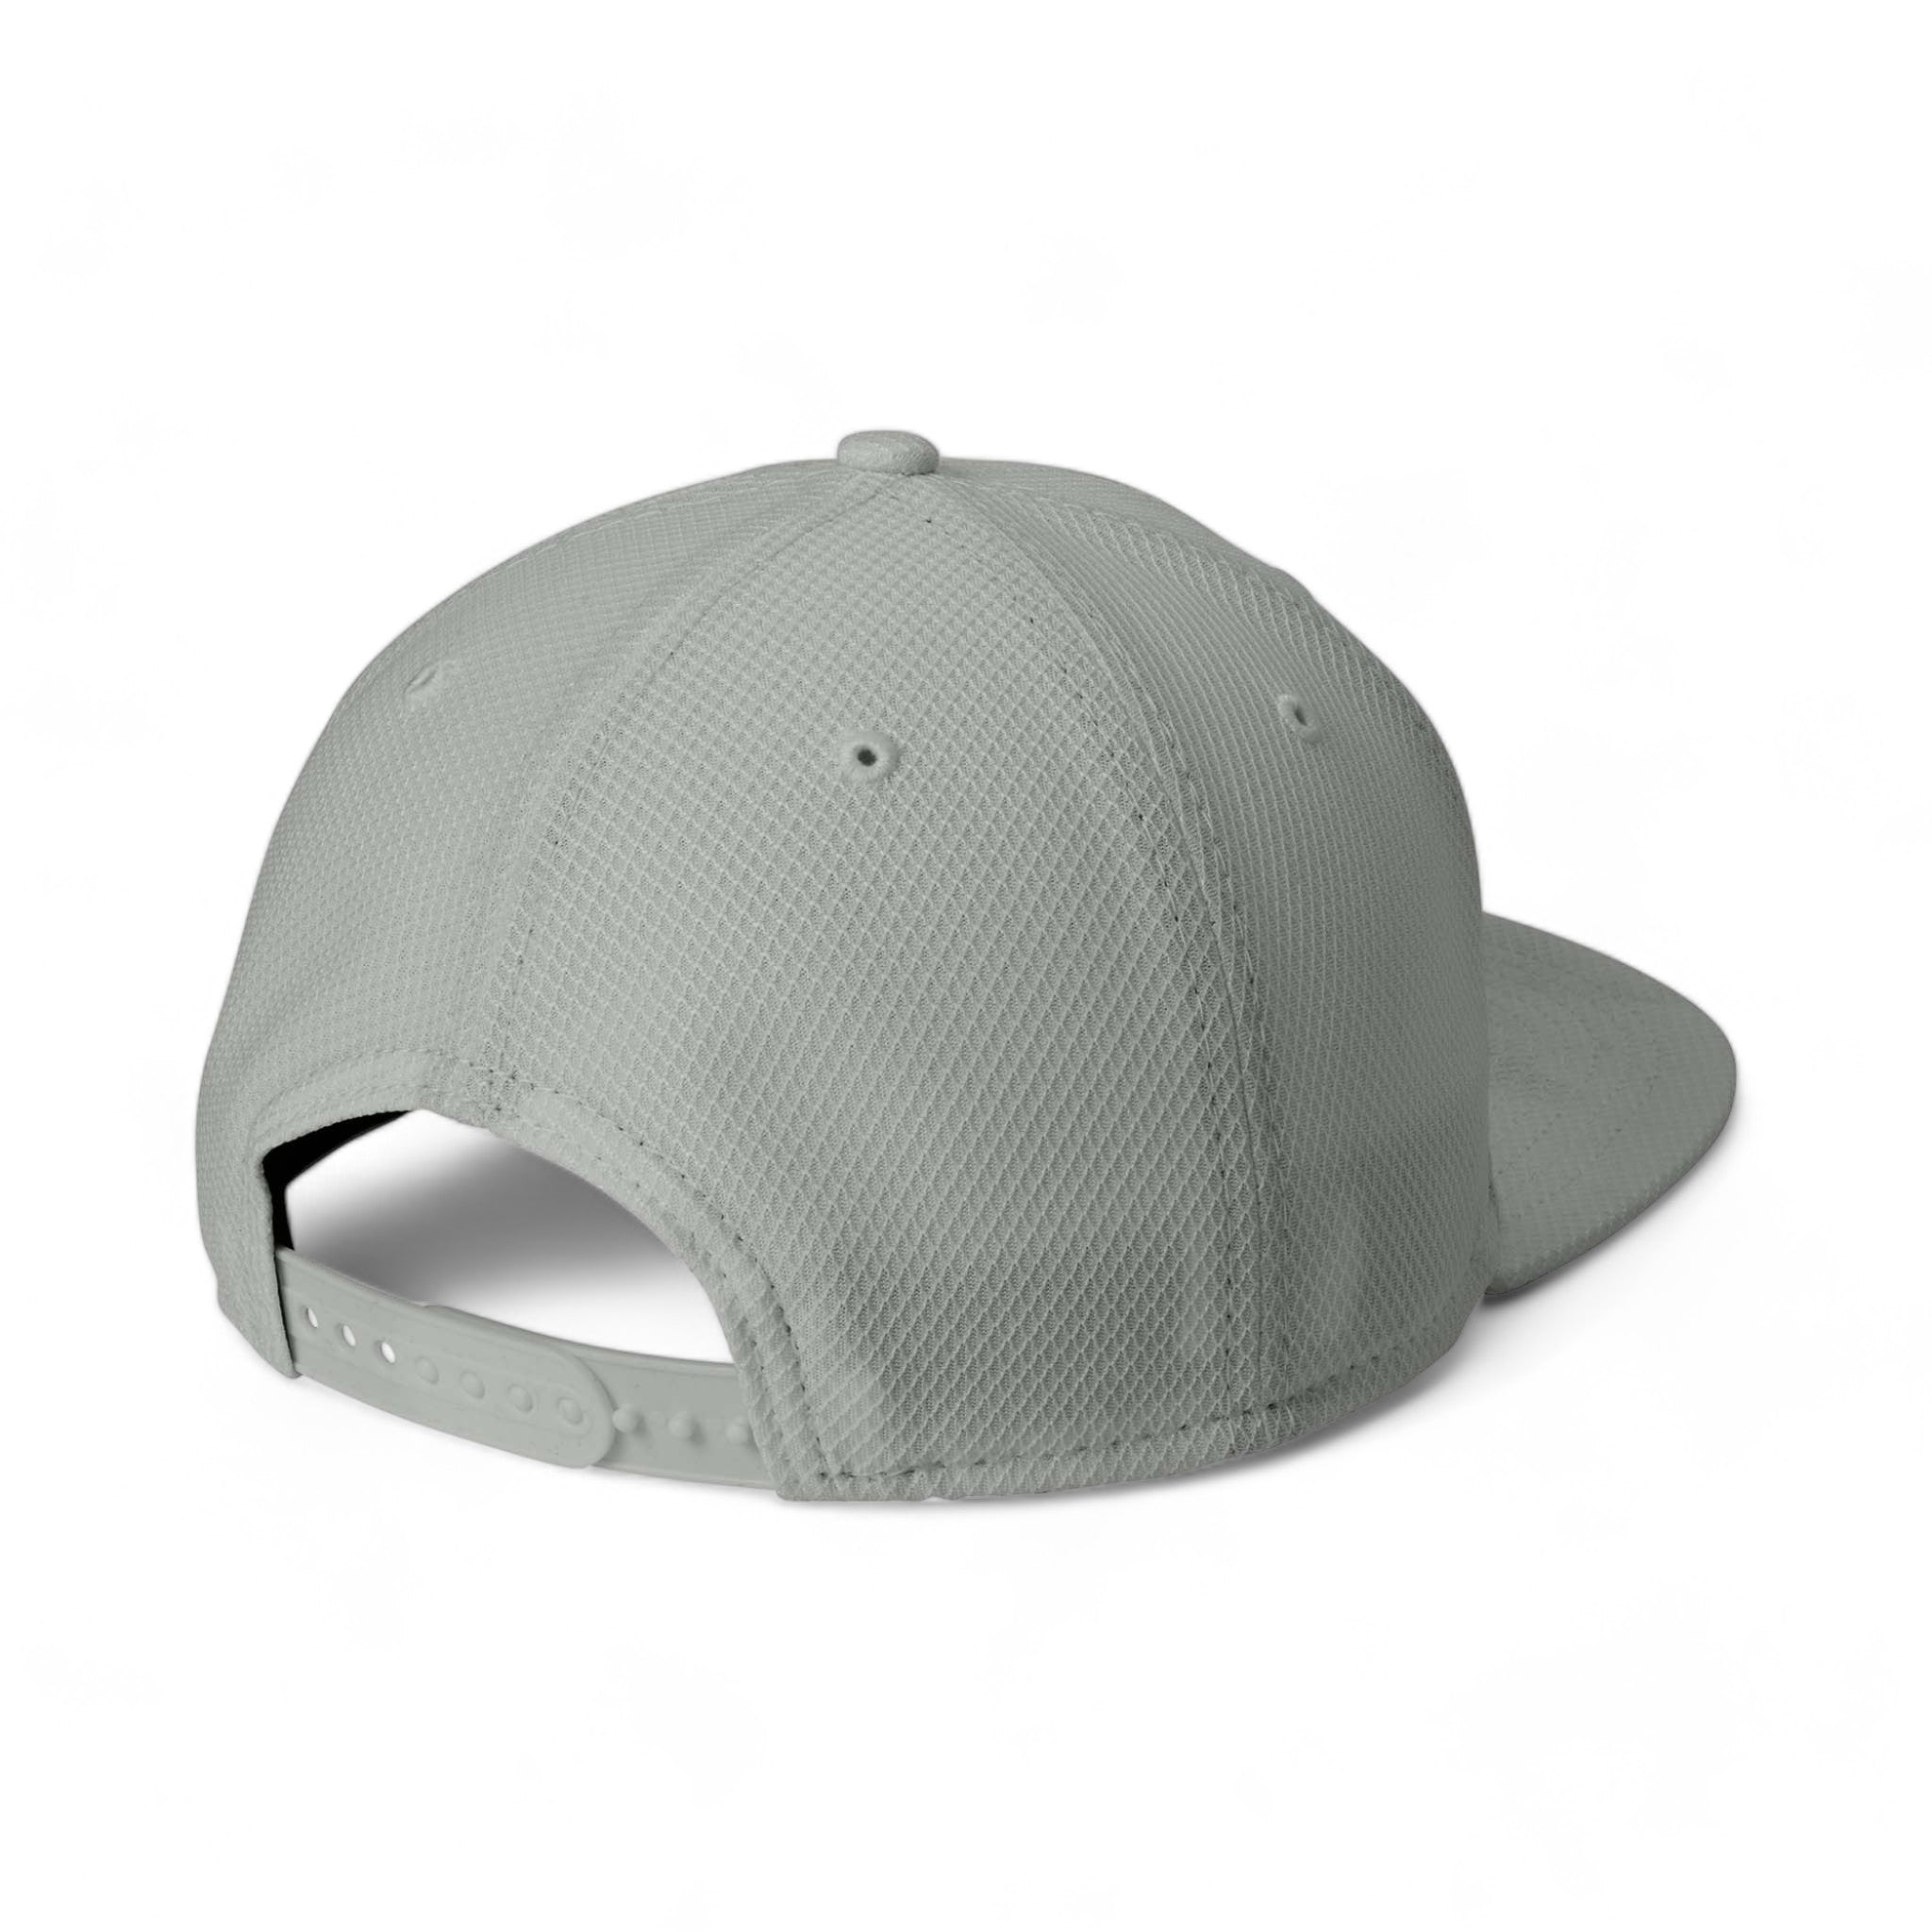 Back view of New Era NE404 custom hat in grey